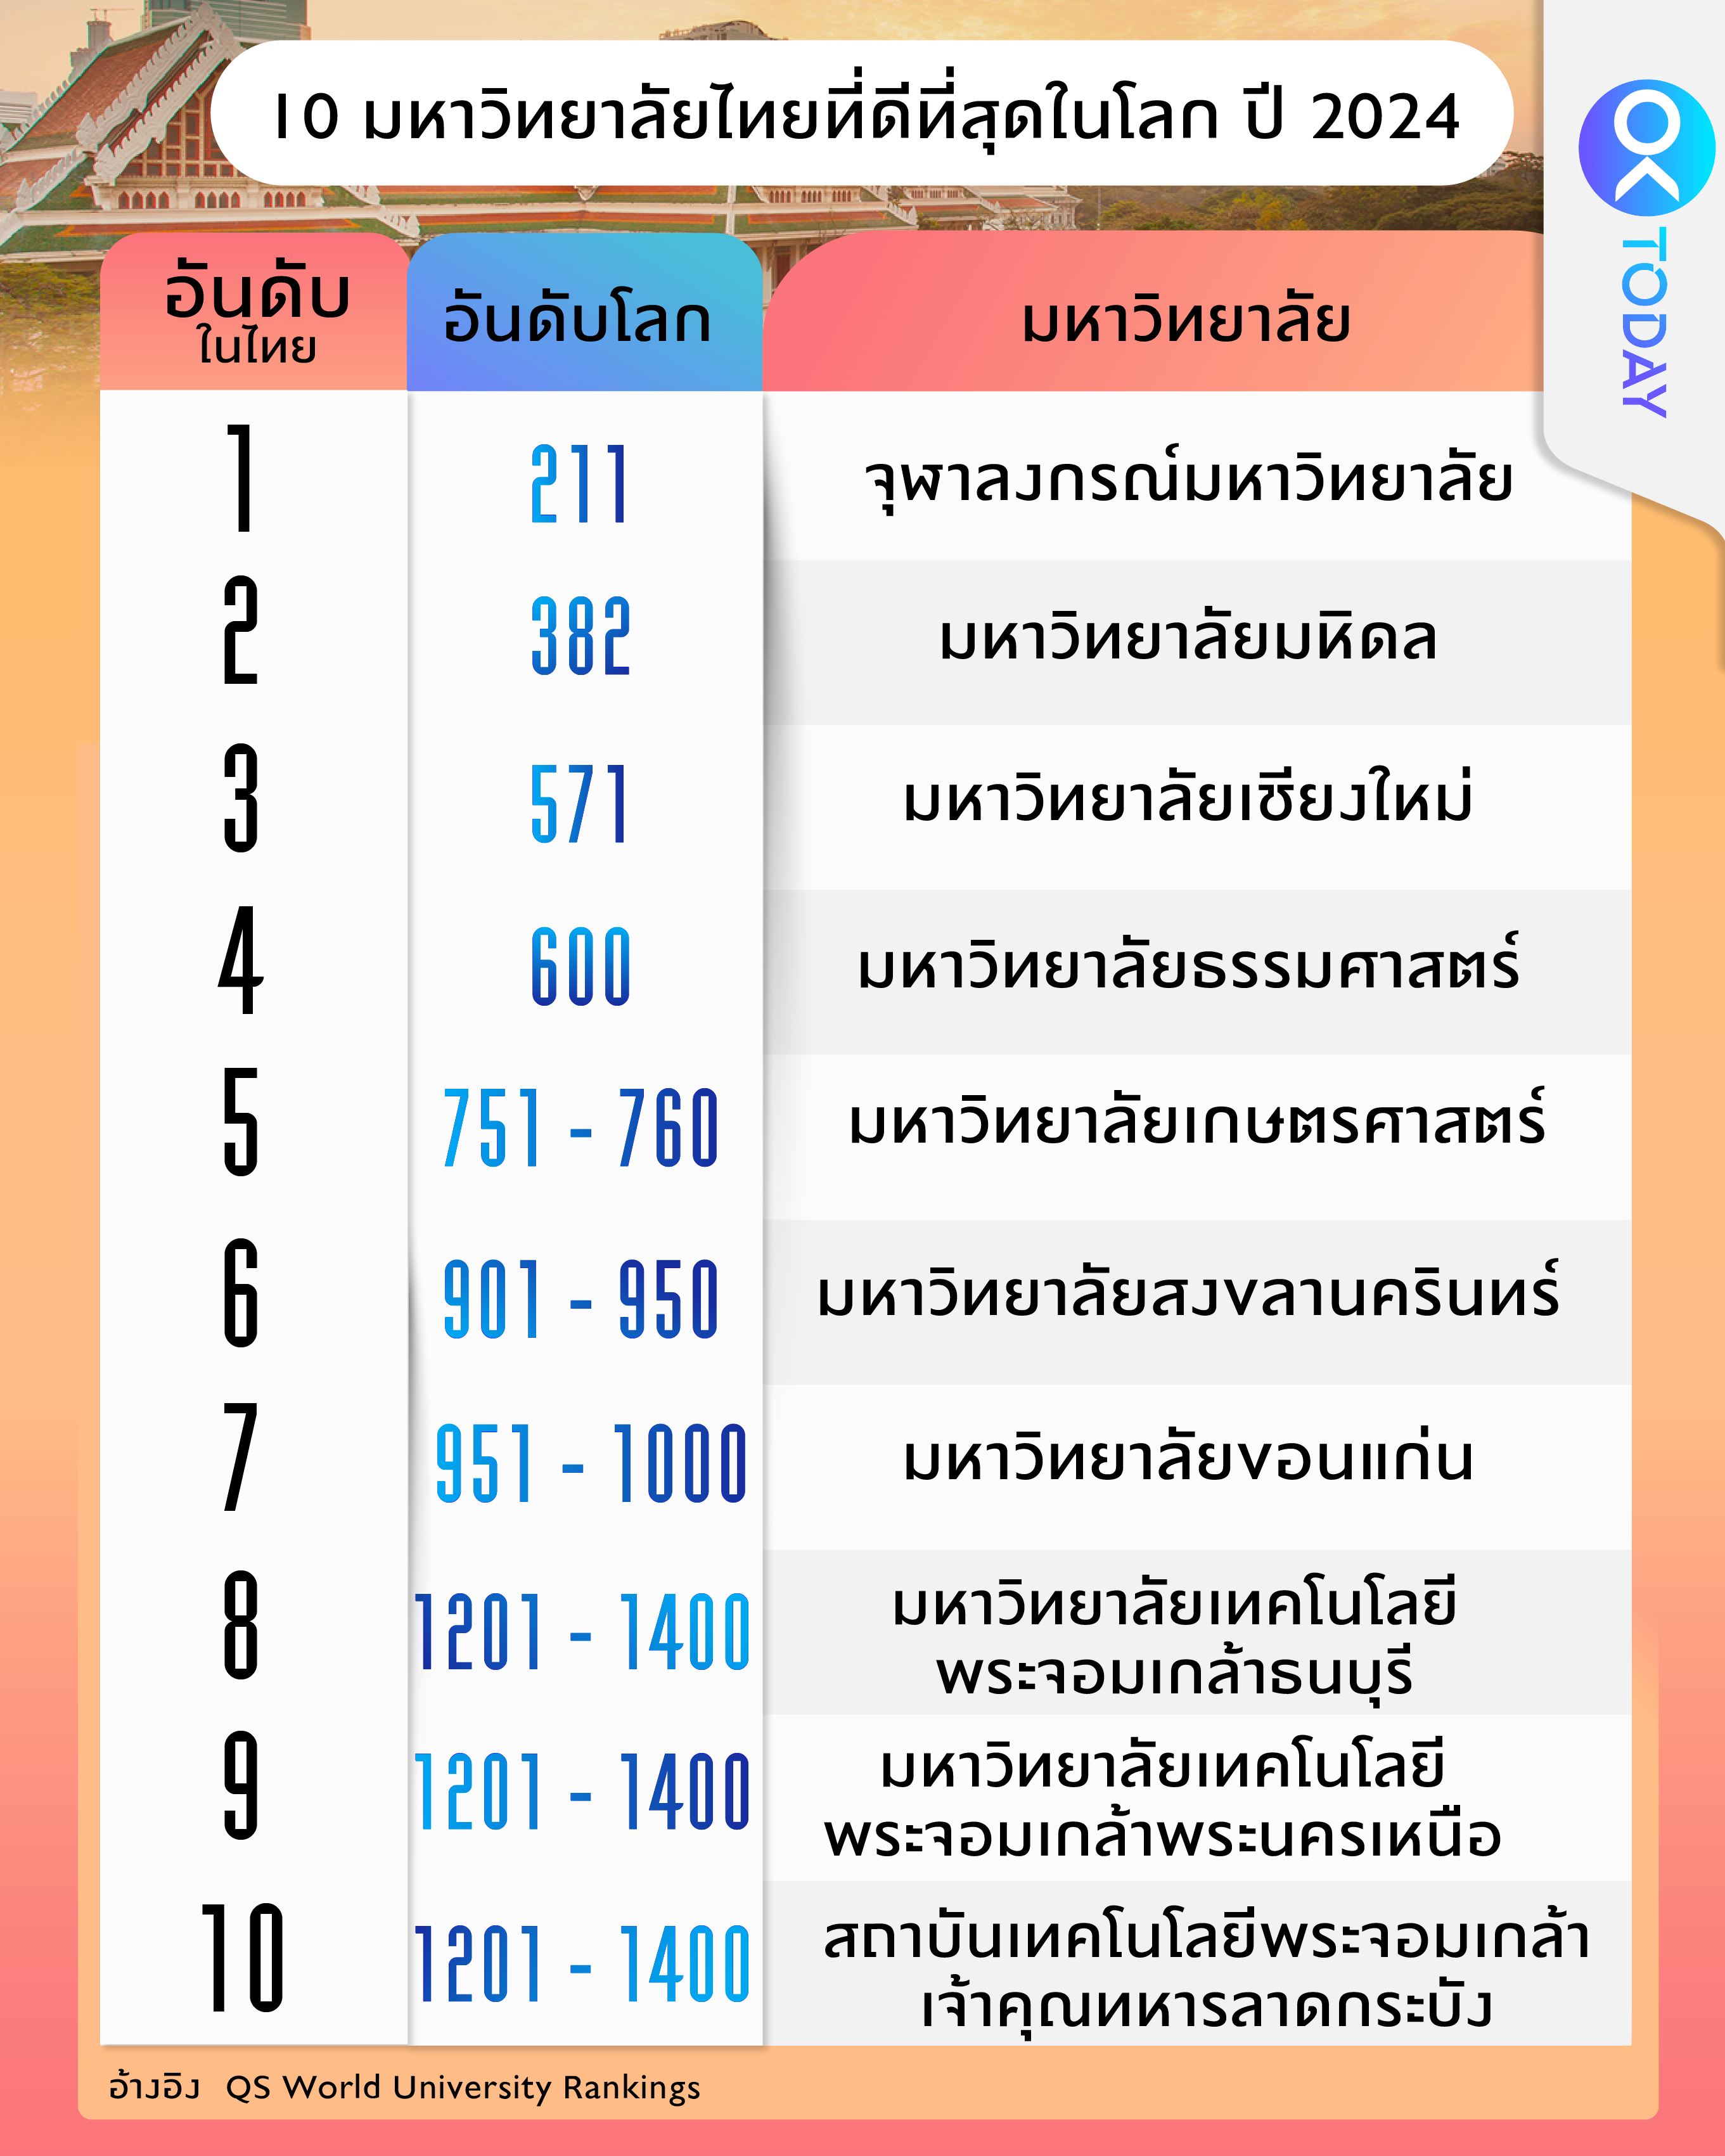 Top 10 มหาวิทยาลัยไทย ติดโผมหาวิทยาลัยที่ดีที่สุดในโลก ปี 2024